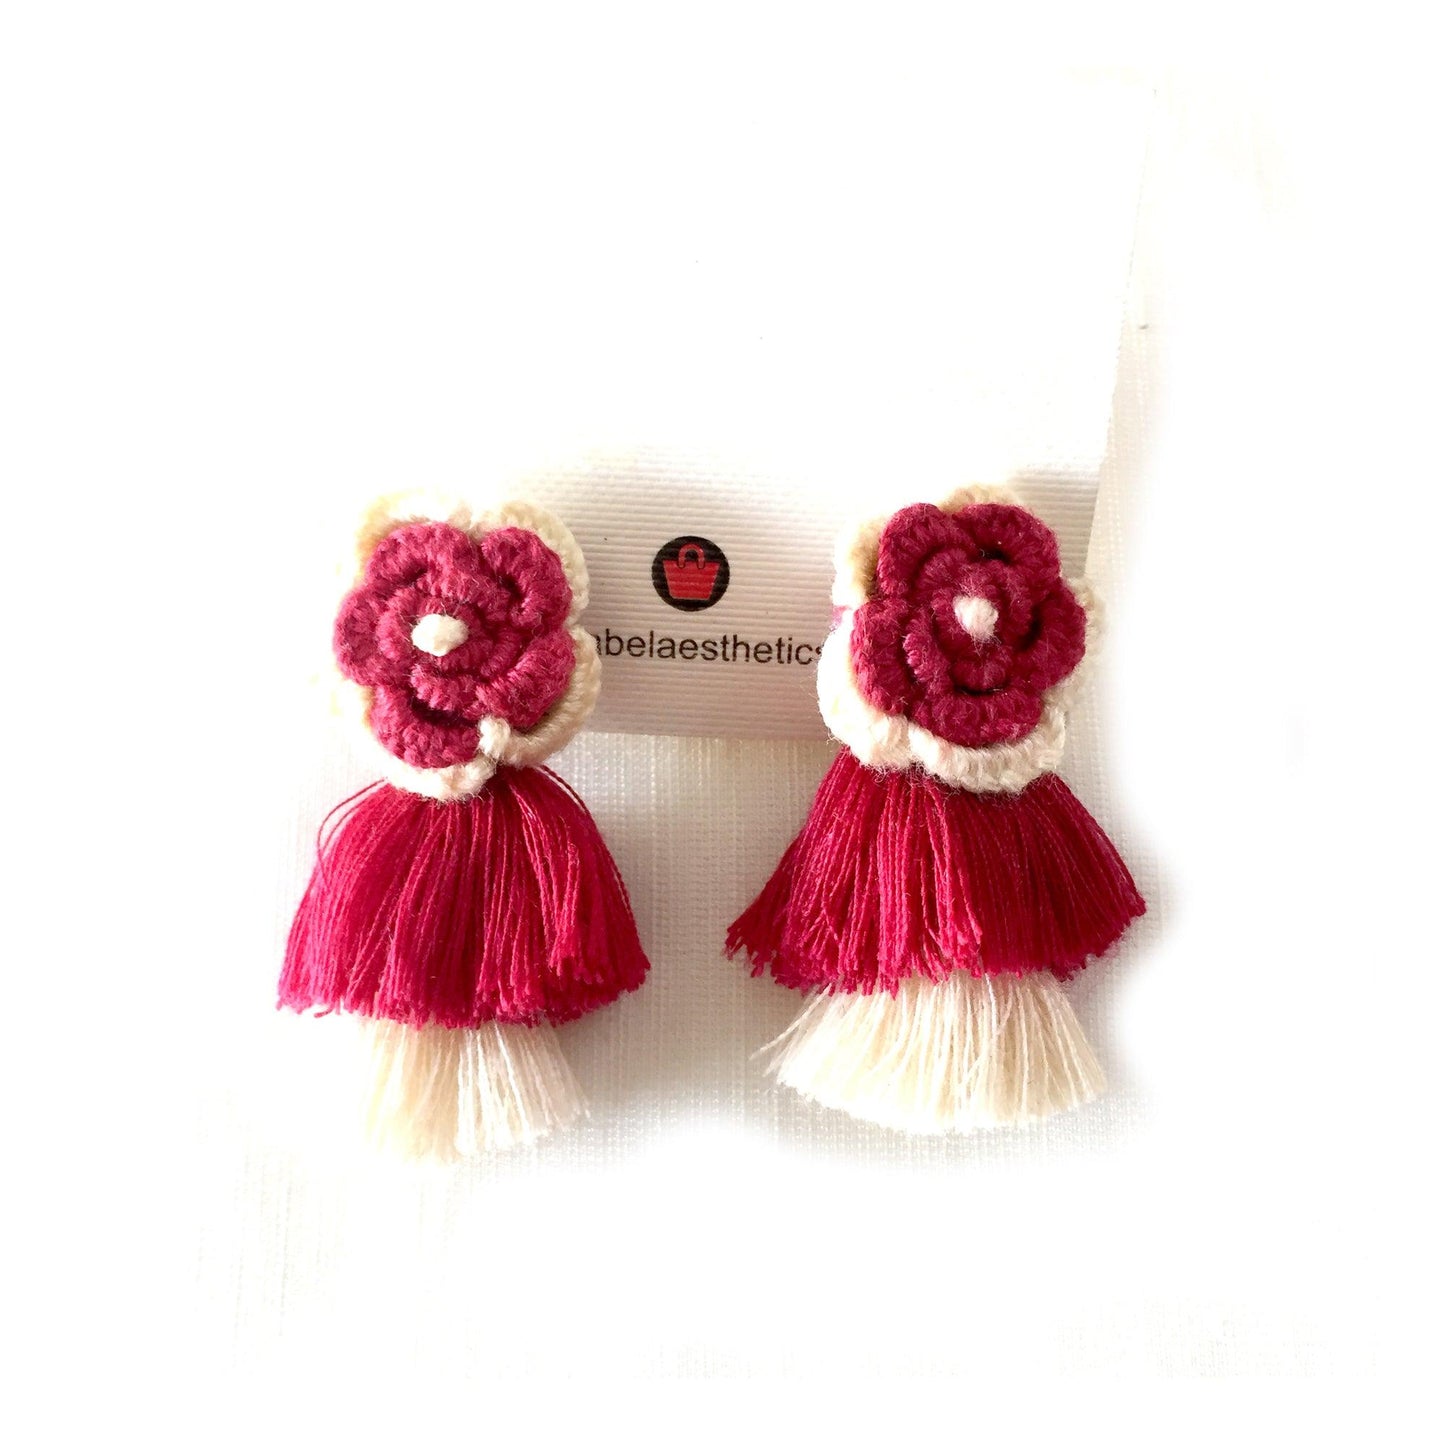 Handmade crochet flower earrings - Aesthetics Designer Label